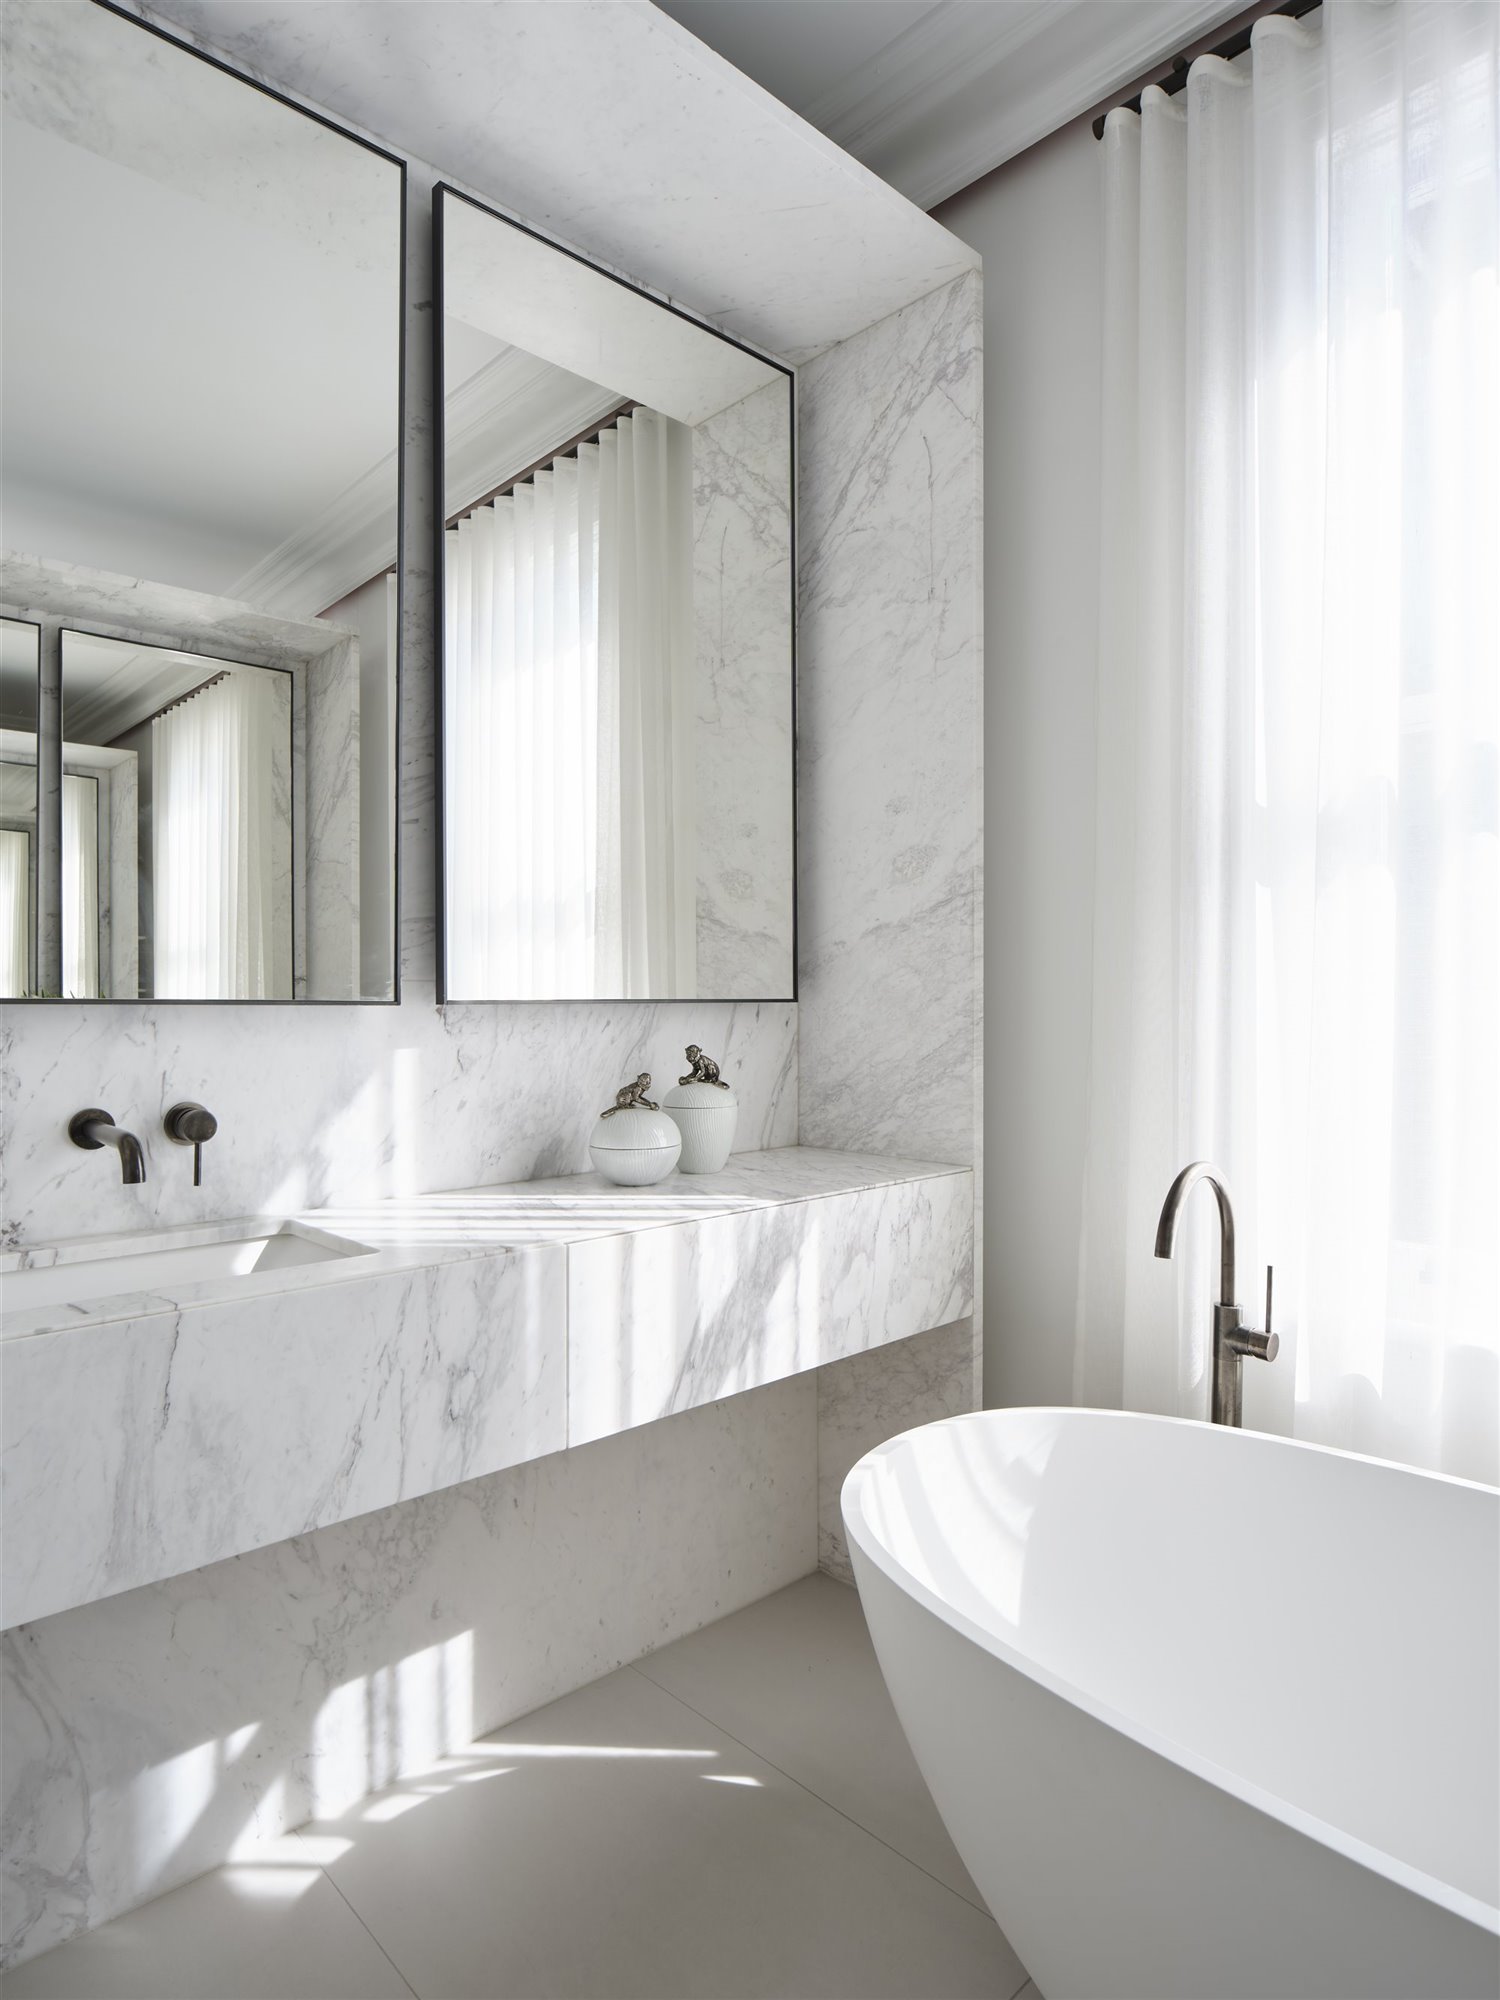 Baño de marmol blanco con espejos